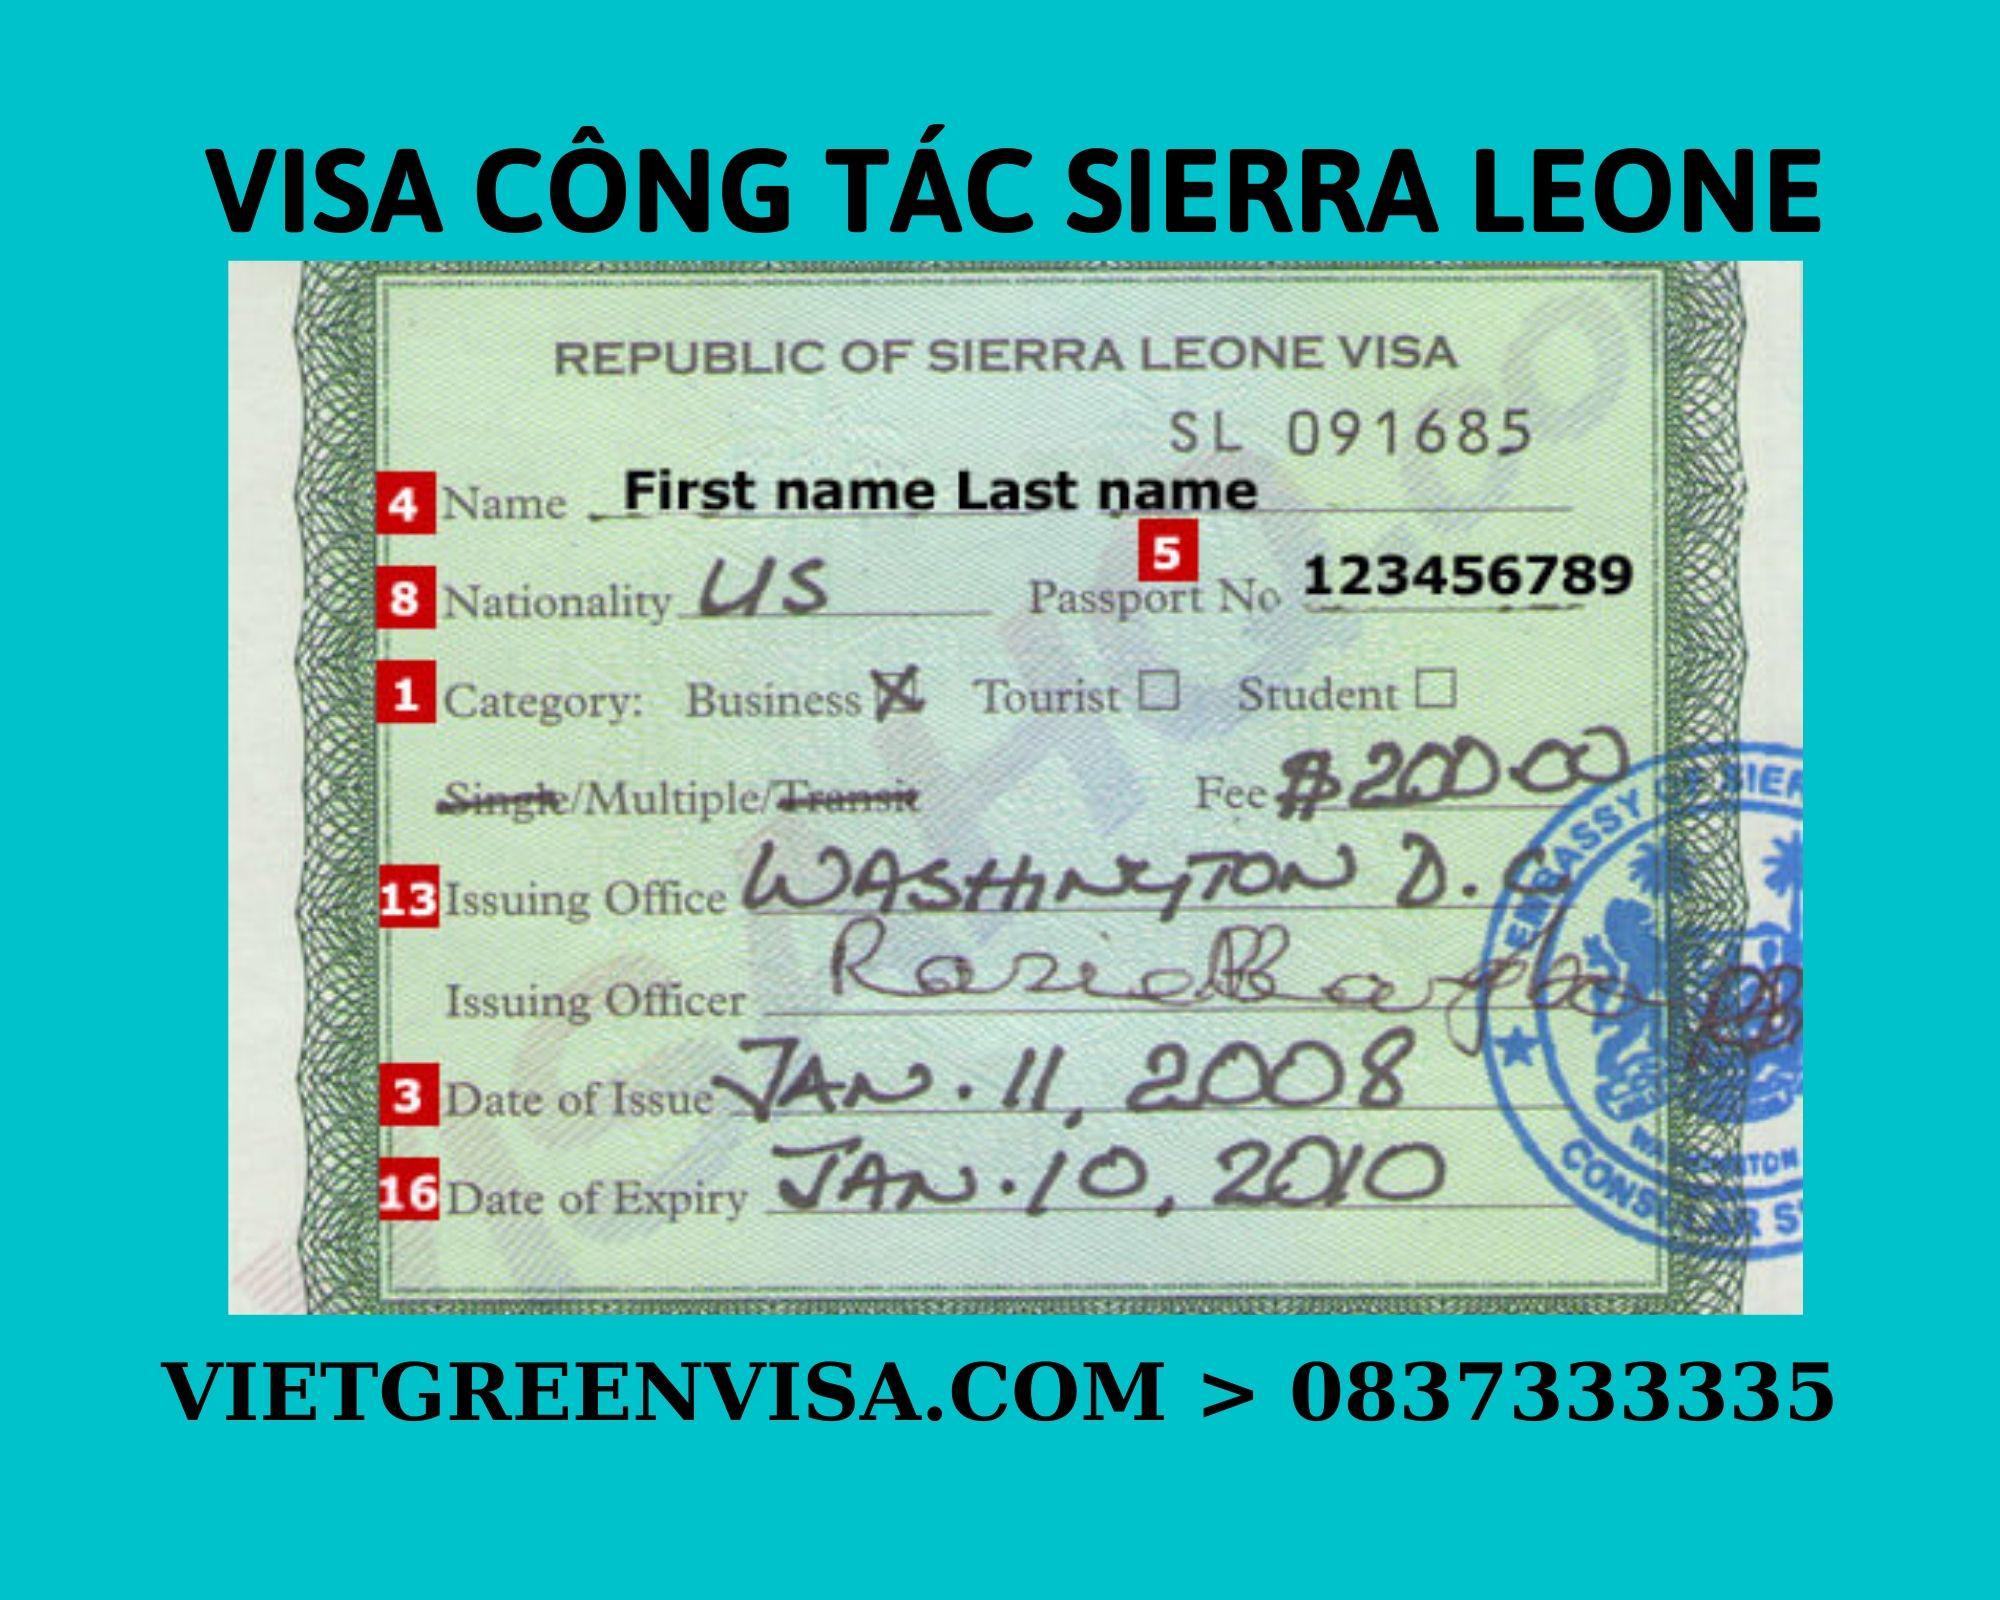 Xin Visa công tác Sierra Leone uy tín, nhanh chóng